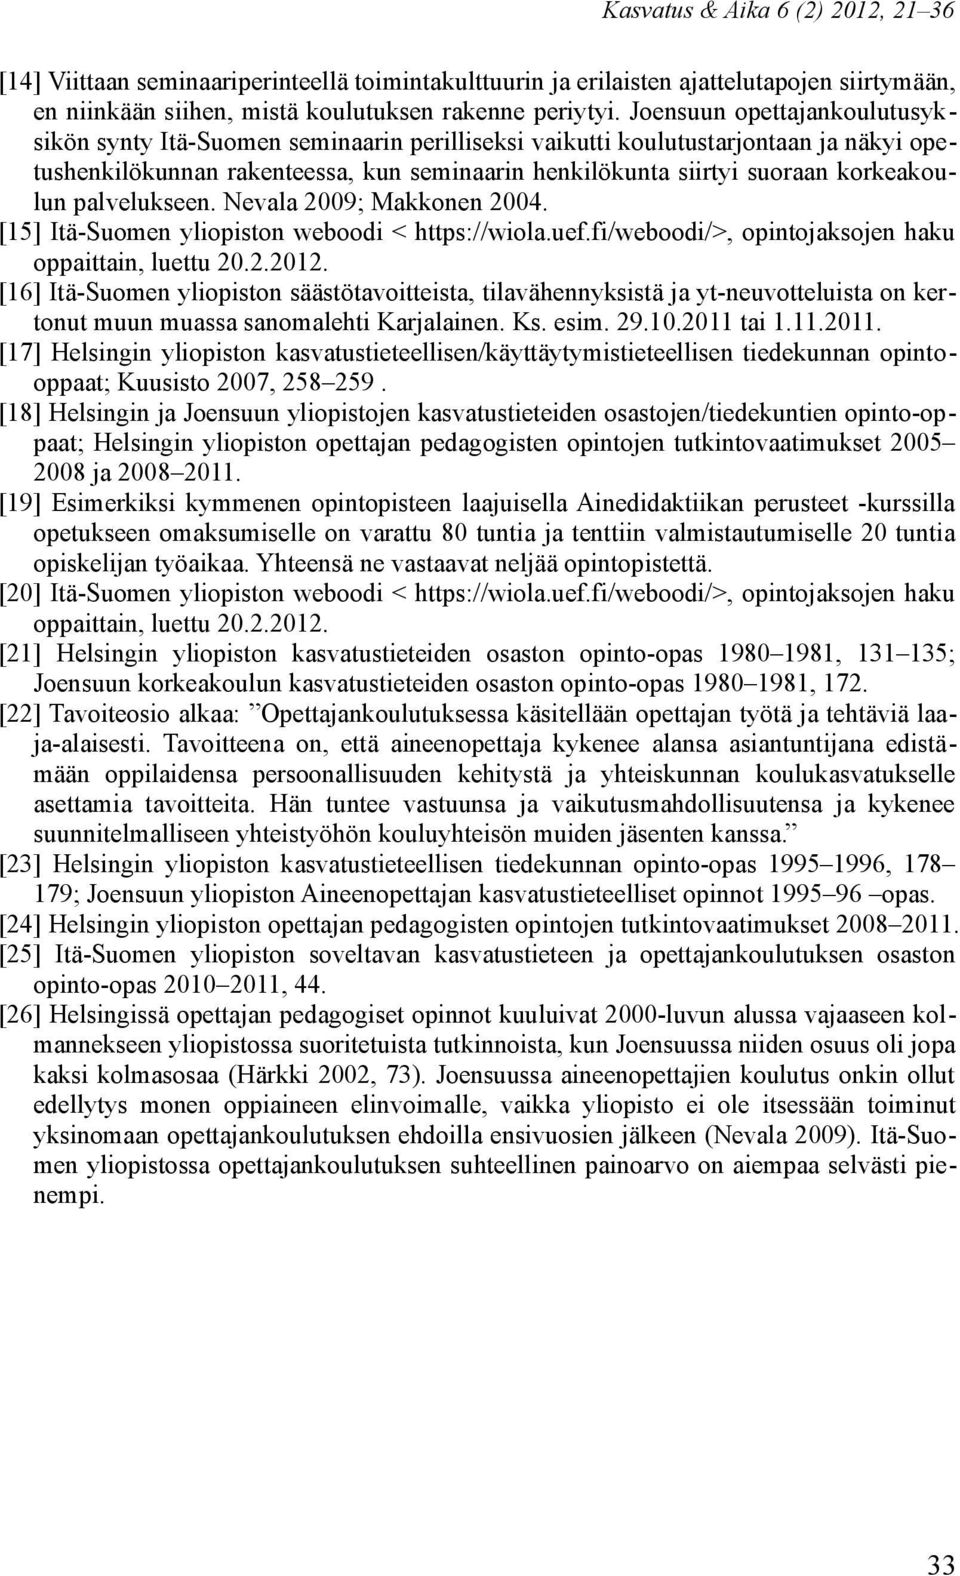 korkeakoulun palvelukseen. Nevala 2009; Makkonen 2004. [15] Itä-Suomen yliopiston weboodi < https://wiola.uef.fi/weboodi/>, opintojaksojen haku oppaittain, luettu 20.2.2012.